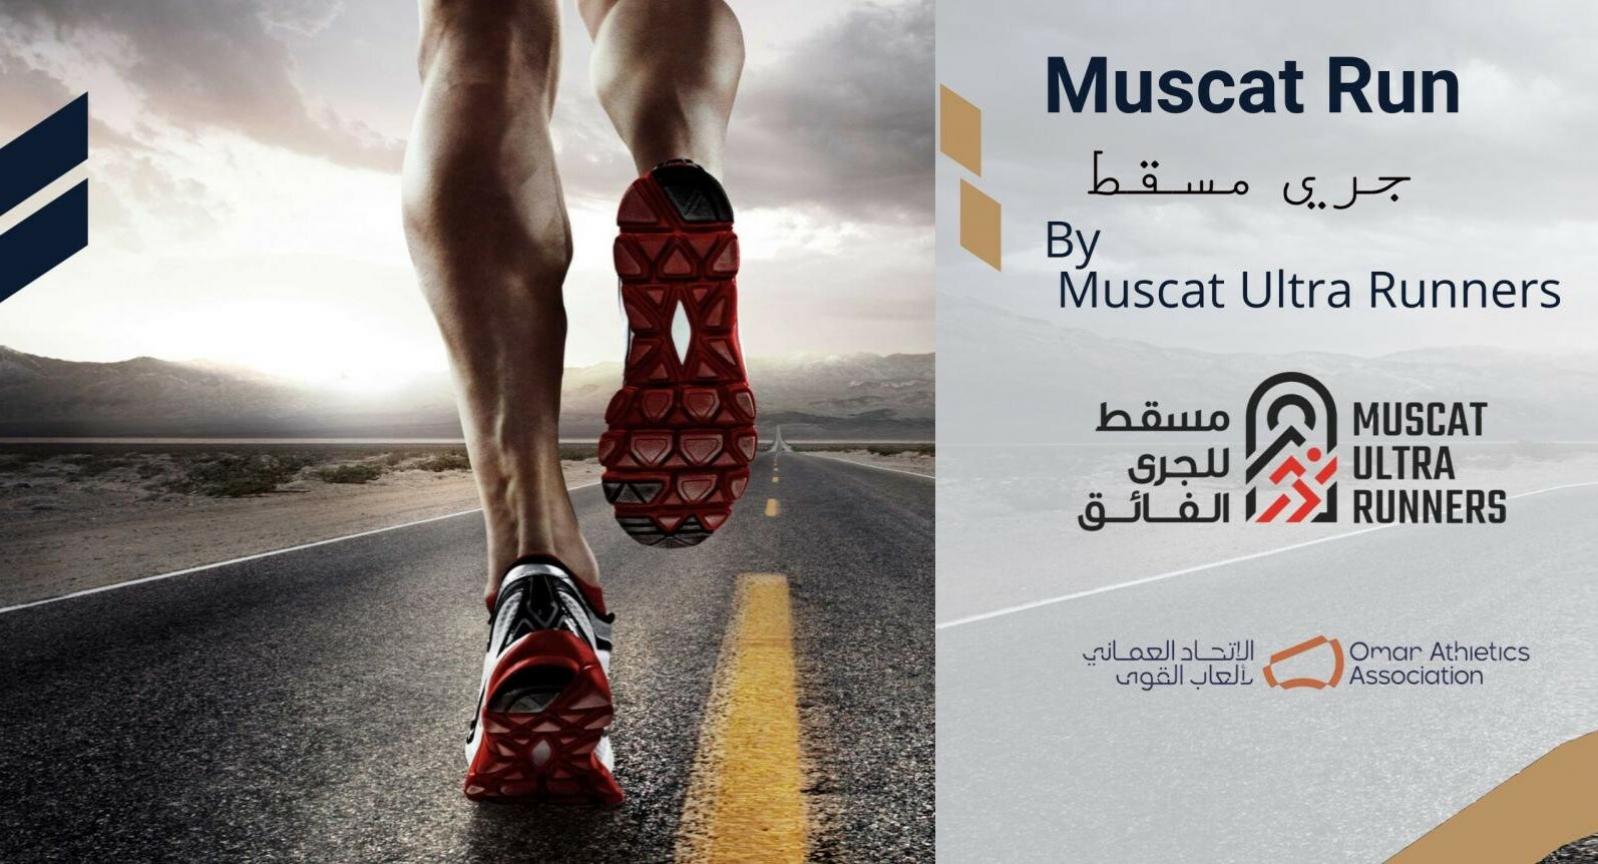 Muscat Ultra Runners